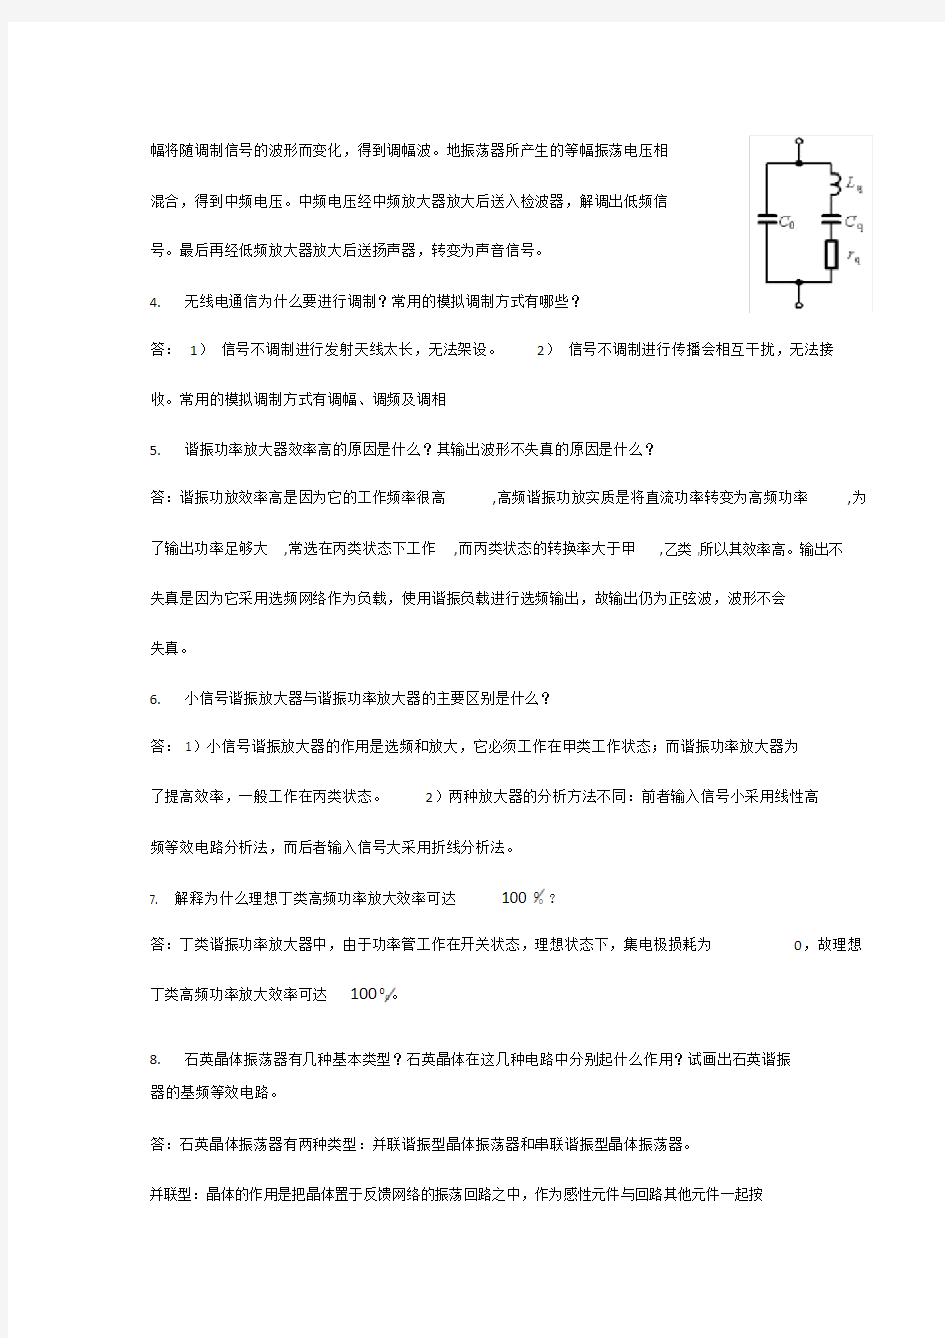 (完整版)高频电子线路简答题—武汉理工大学.doc